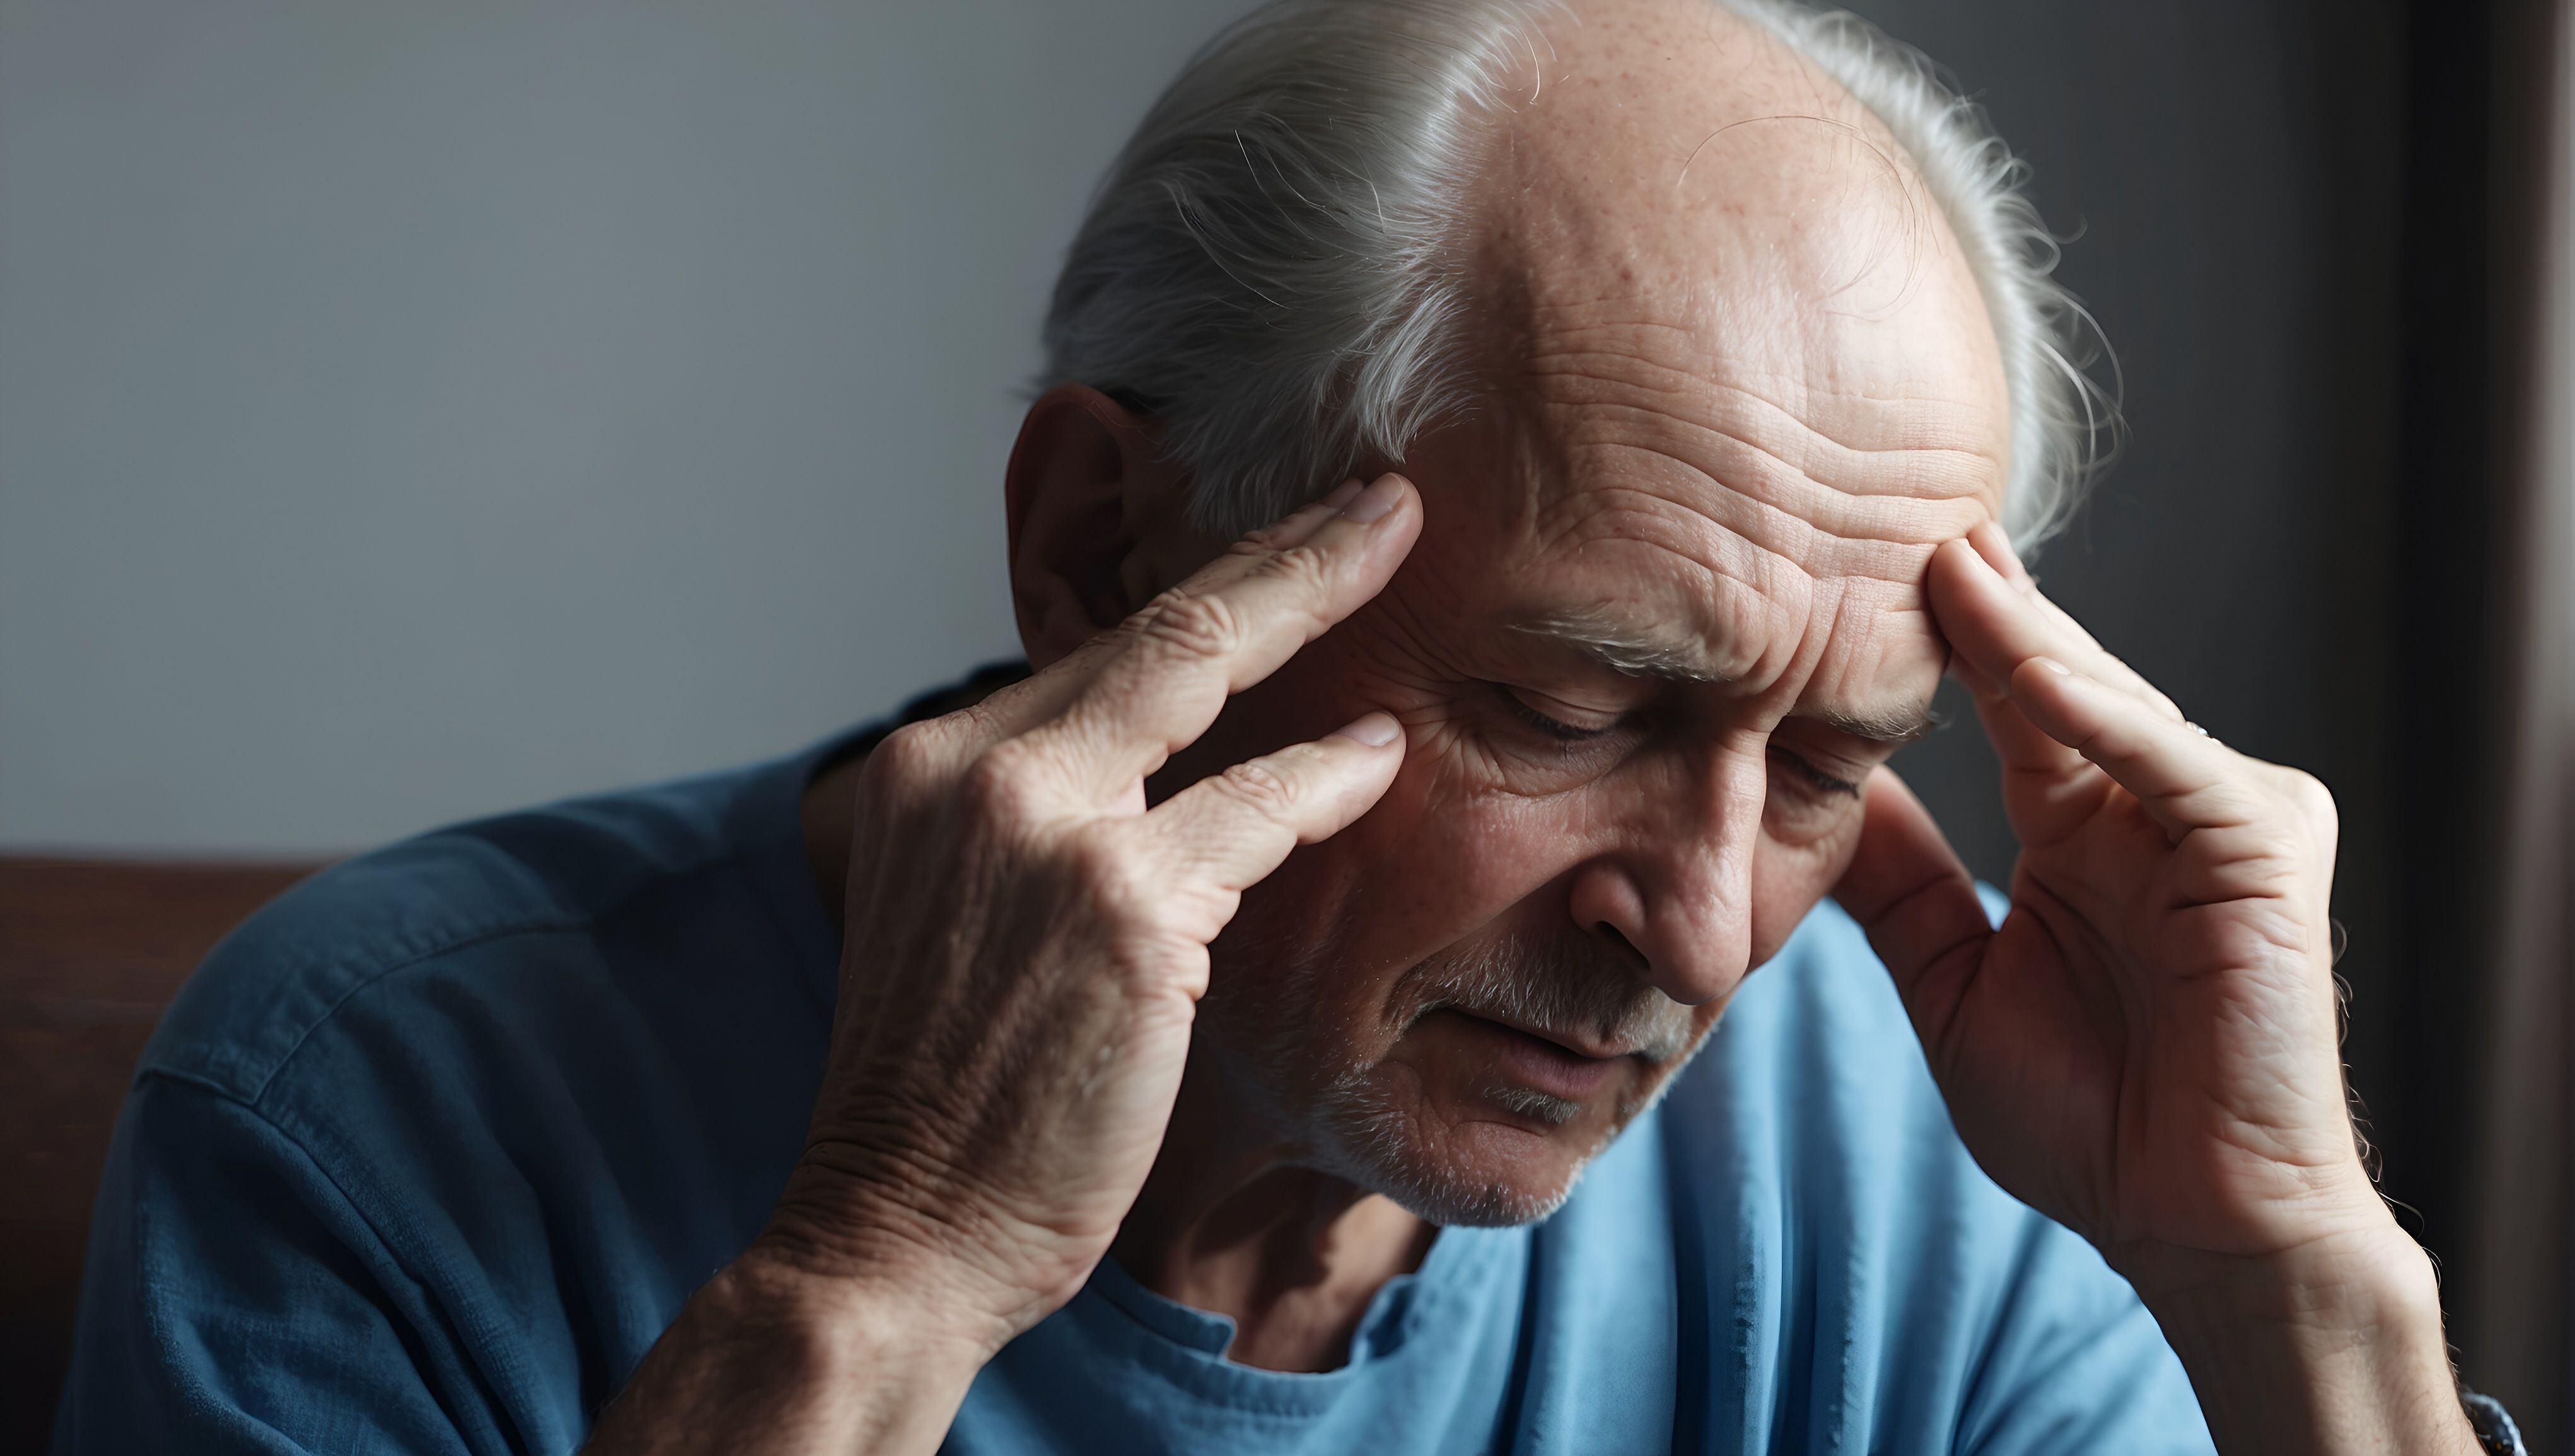 estas son las 3 formas de predecir que sufrirás un dolor de cabeza según un nuevo estudio científico